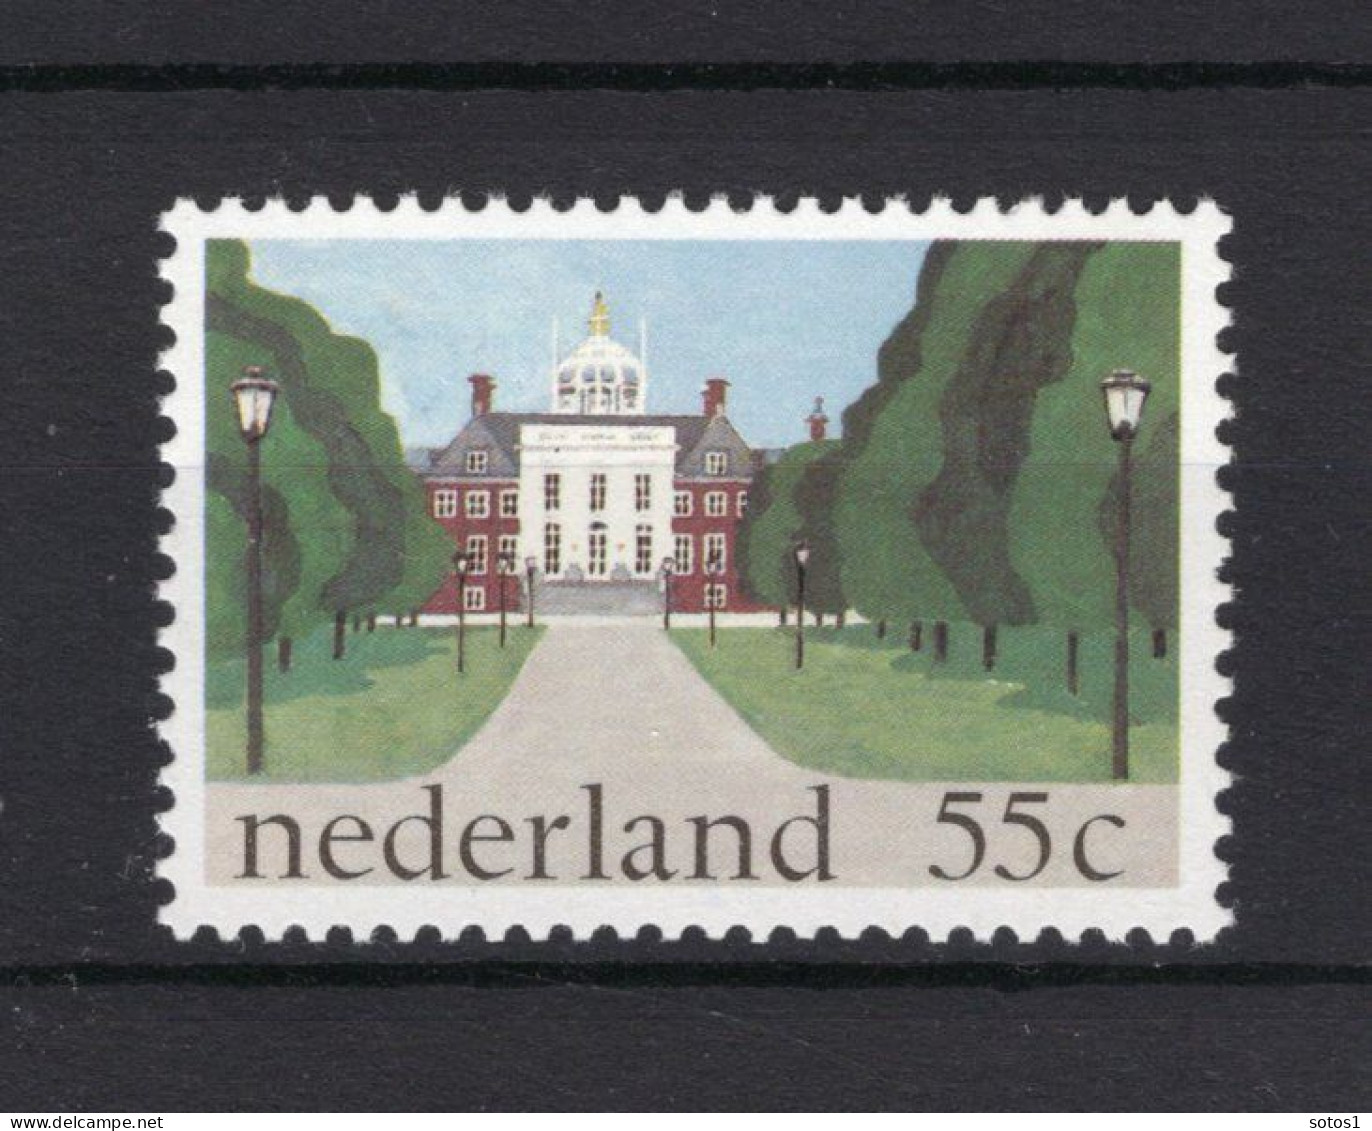 NEDERLAND 1224 MNH 1981 - Paleis Huis Ten Bosch -2 - Unused Stamps